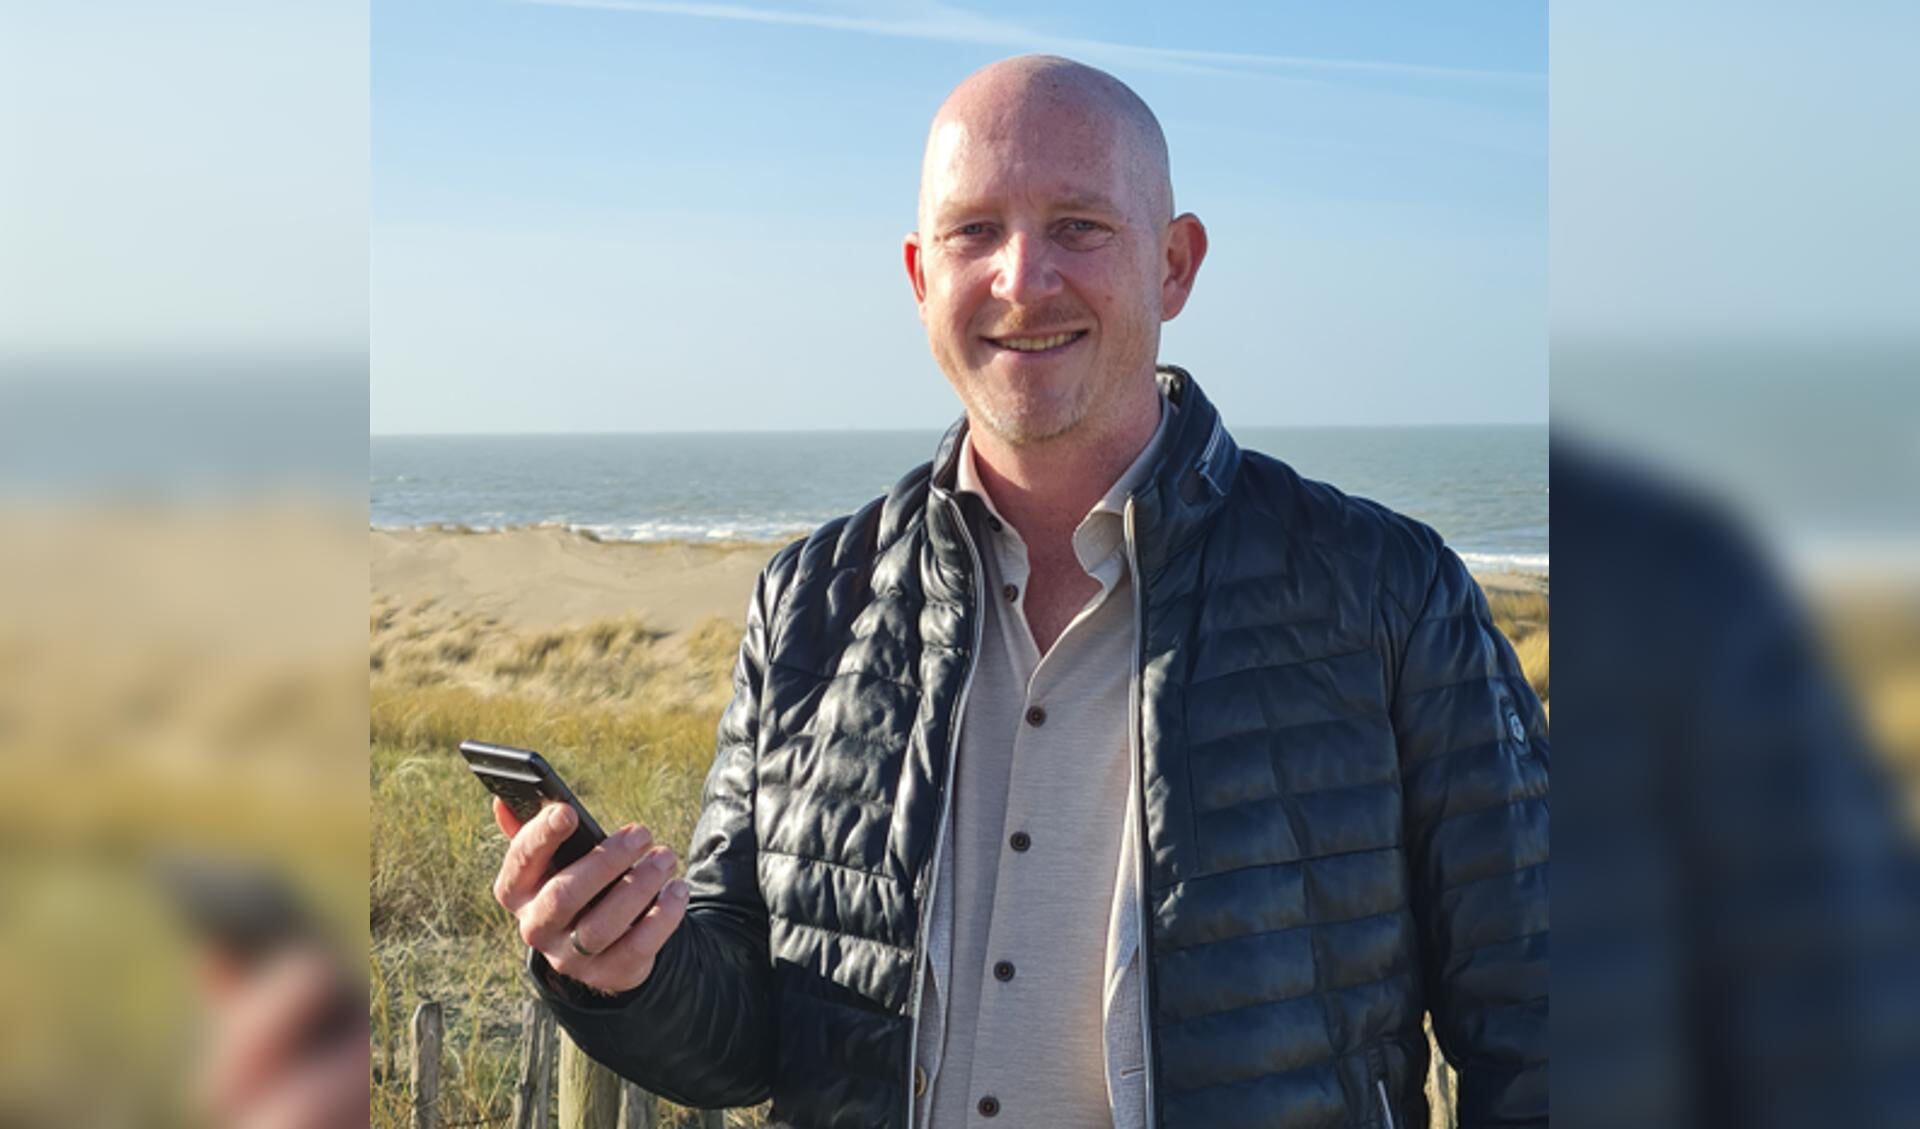 Jeroen Slaman uit Monster kwam op het idee de crypto-wallet in het Westland te introduceren. Daar hebben ook andere regio's in Nederland wel oren naar.